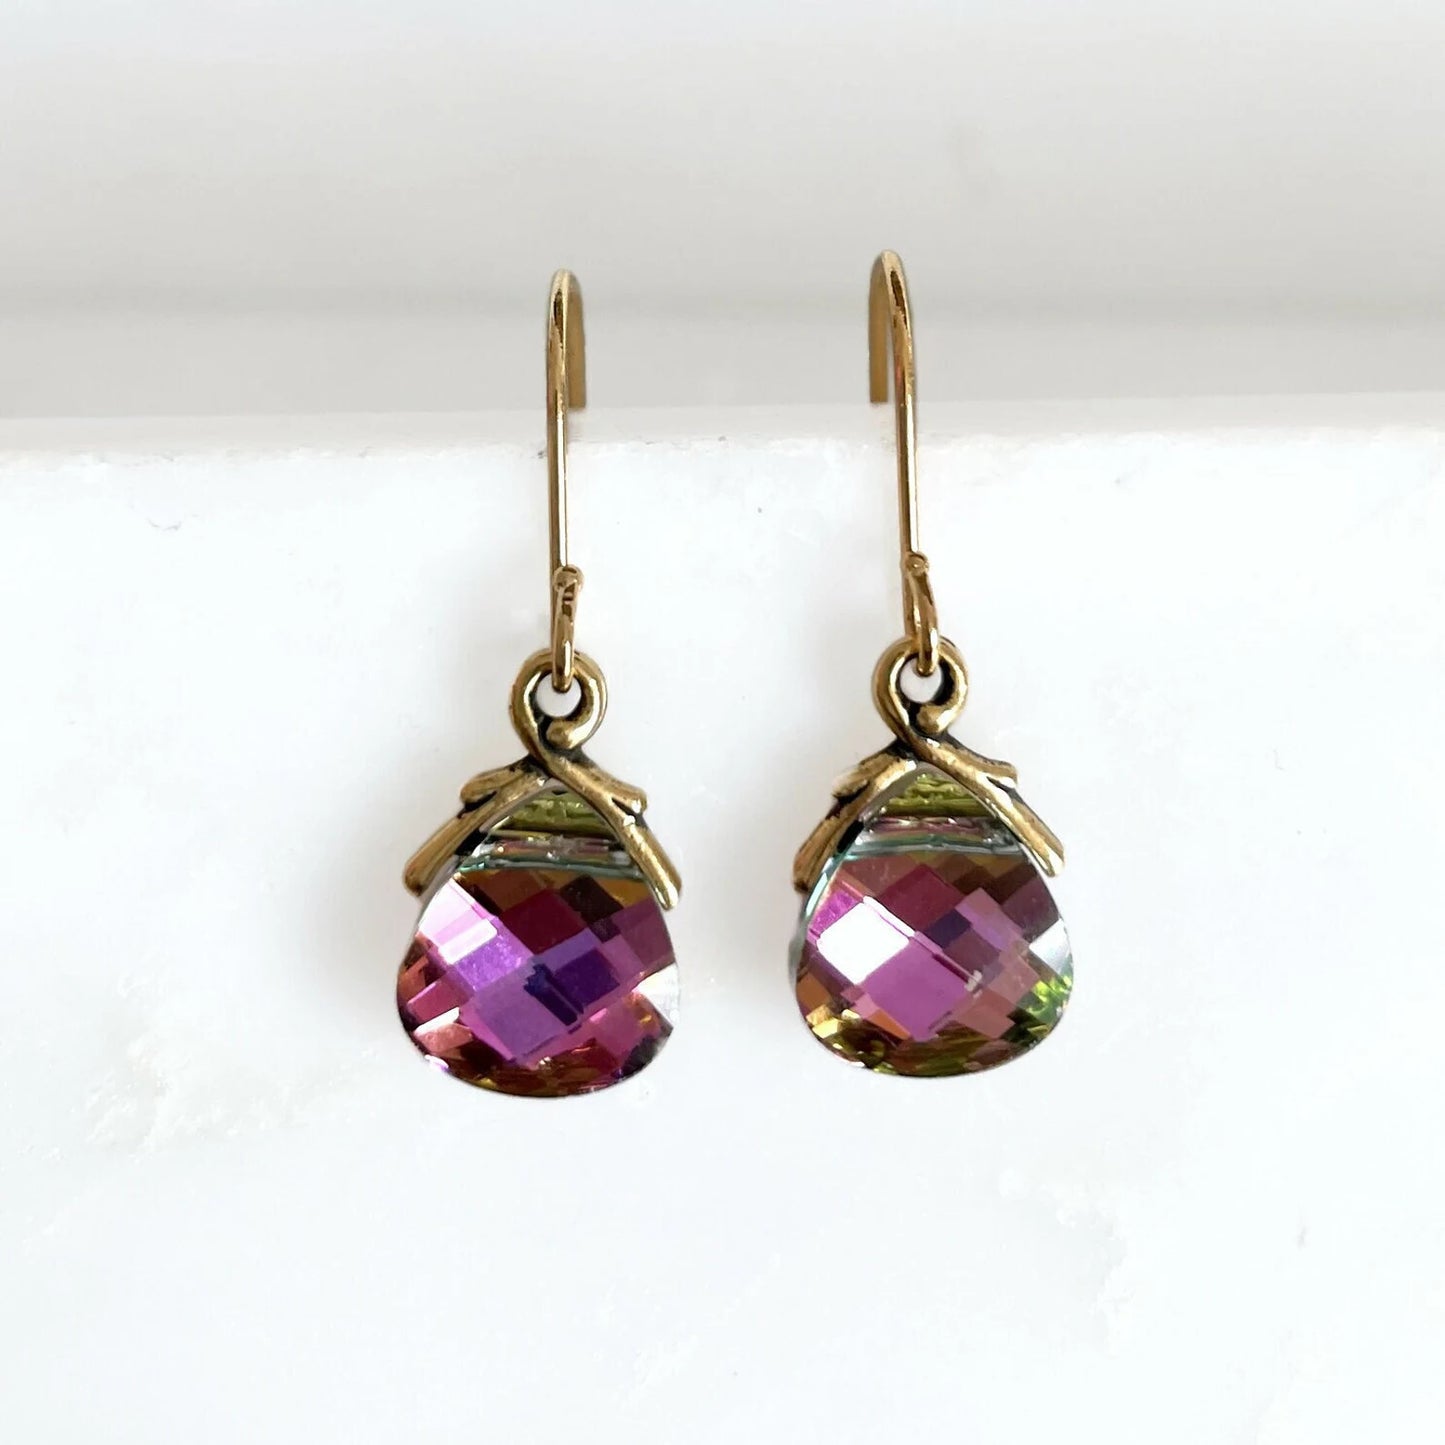 Light rainbow metallic flat briolette earrings